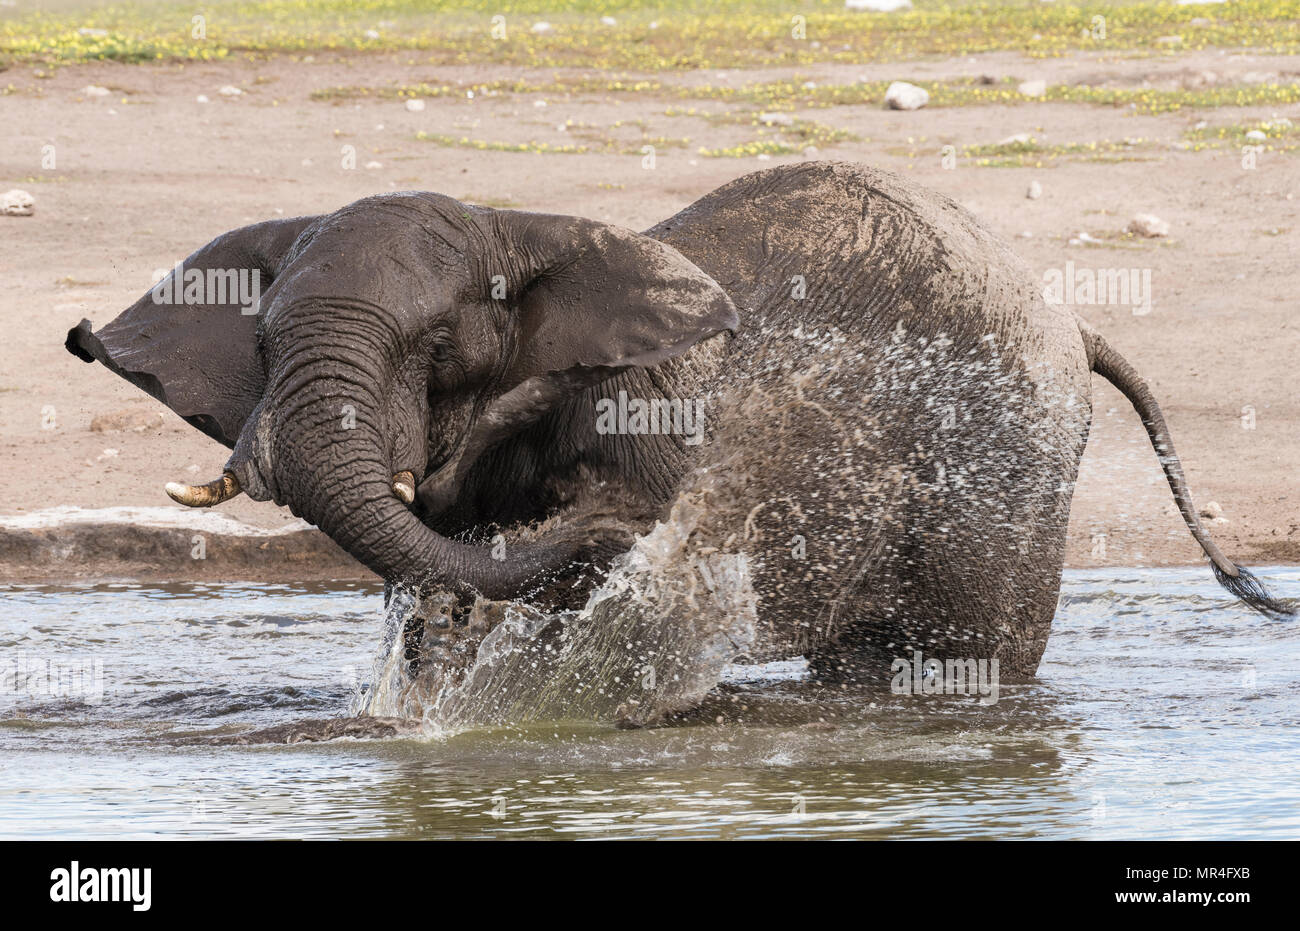 African Elephant at the Chudop Watering Hole, Etosha National Park, Namibia. Stock Photo